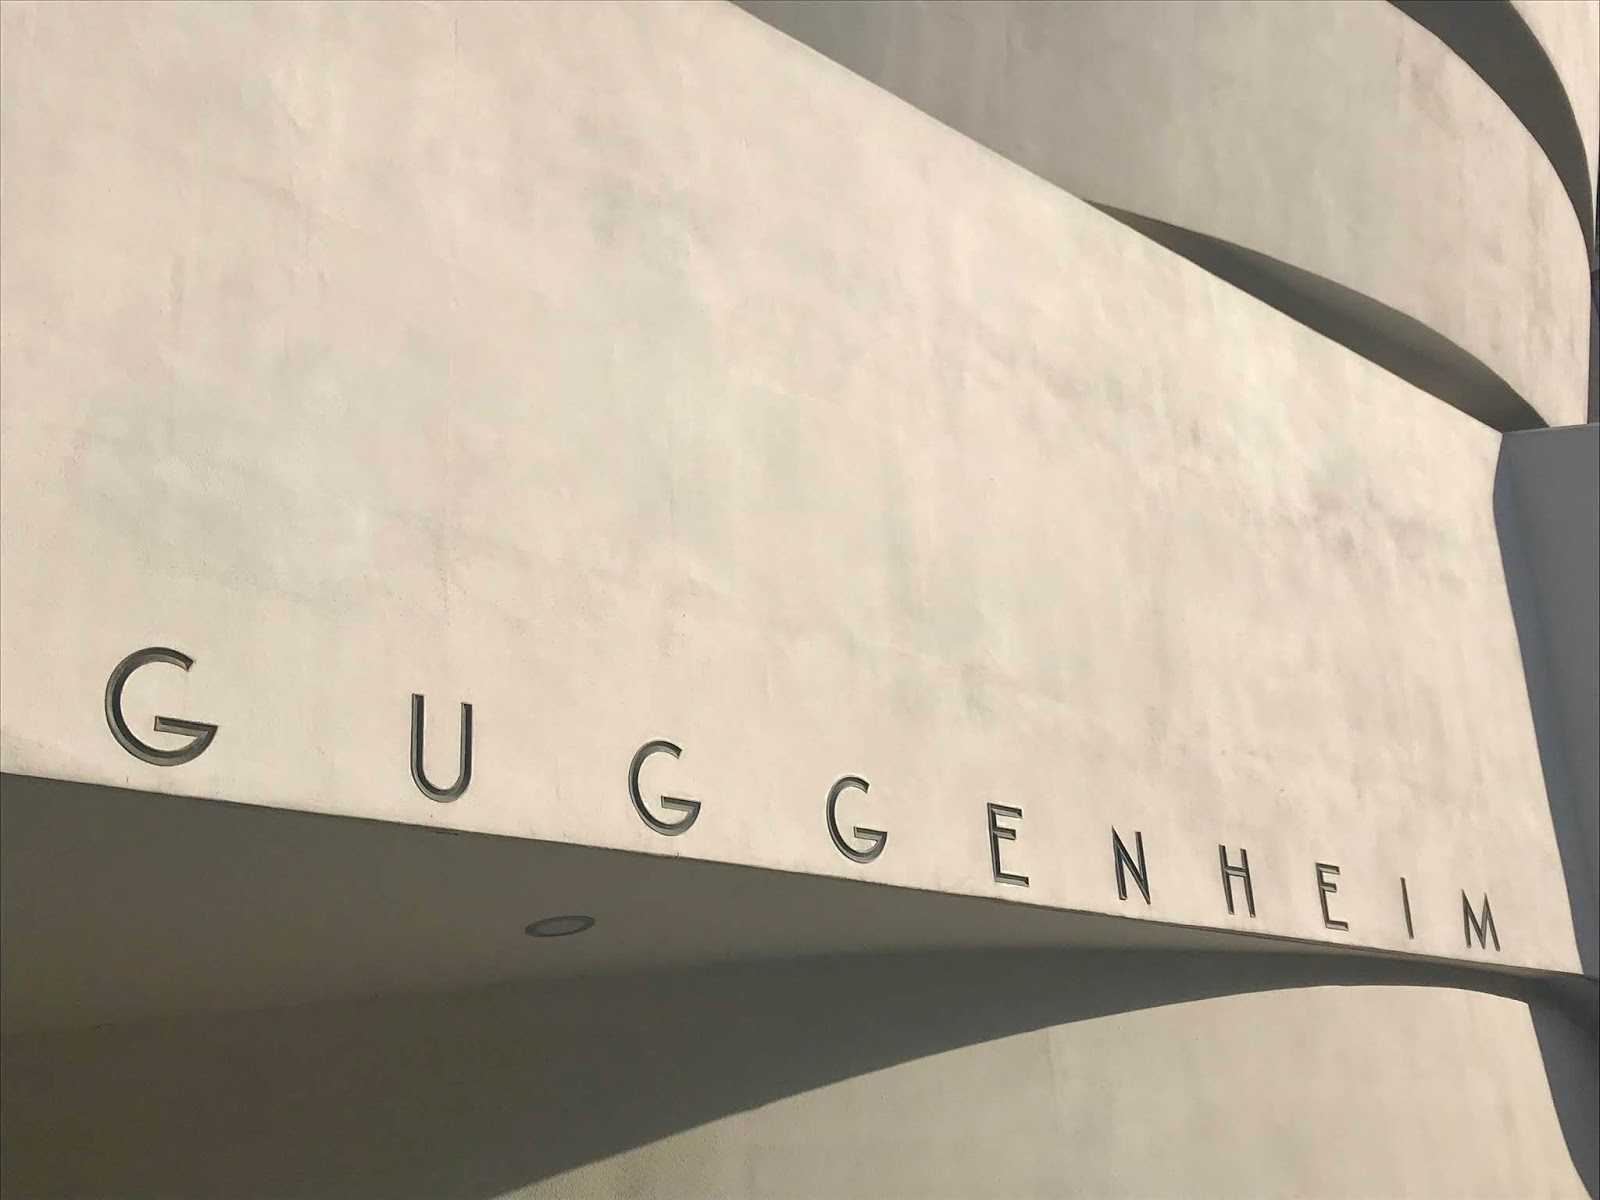 The Guggenheim, New York - Maggie May